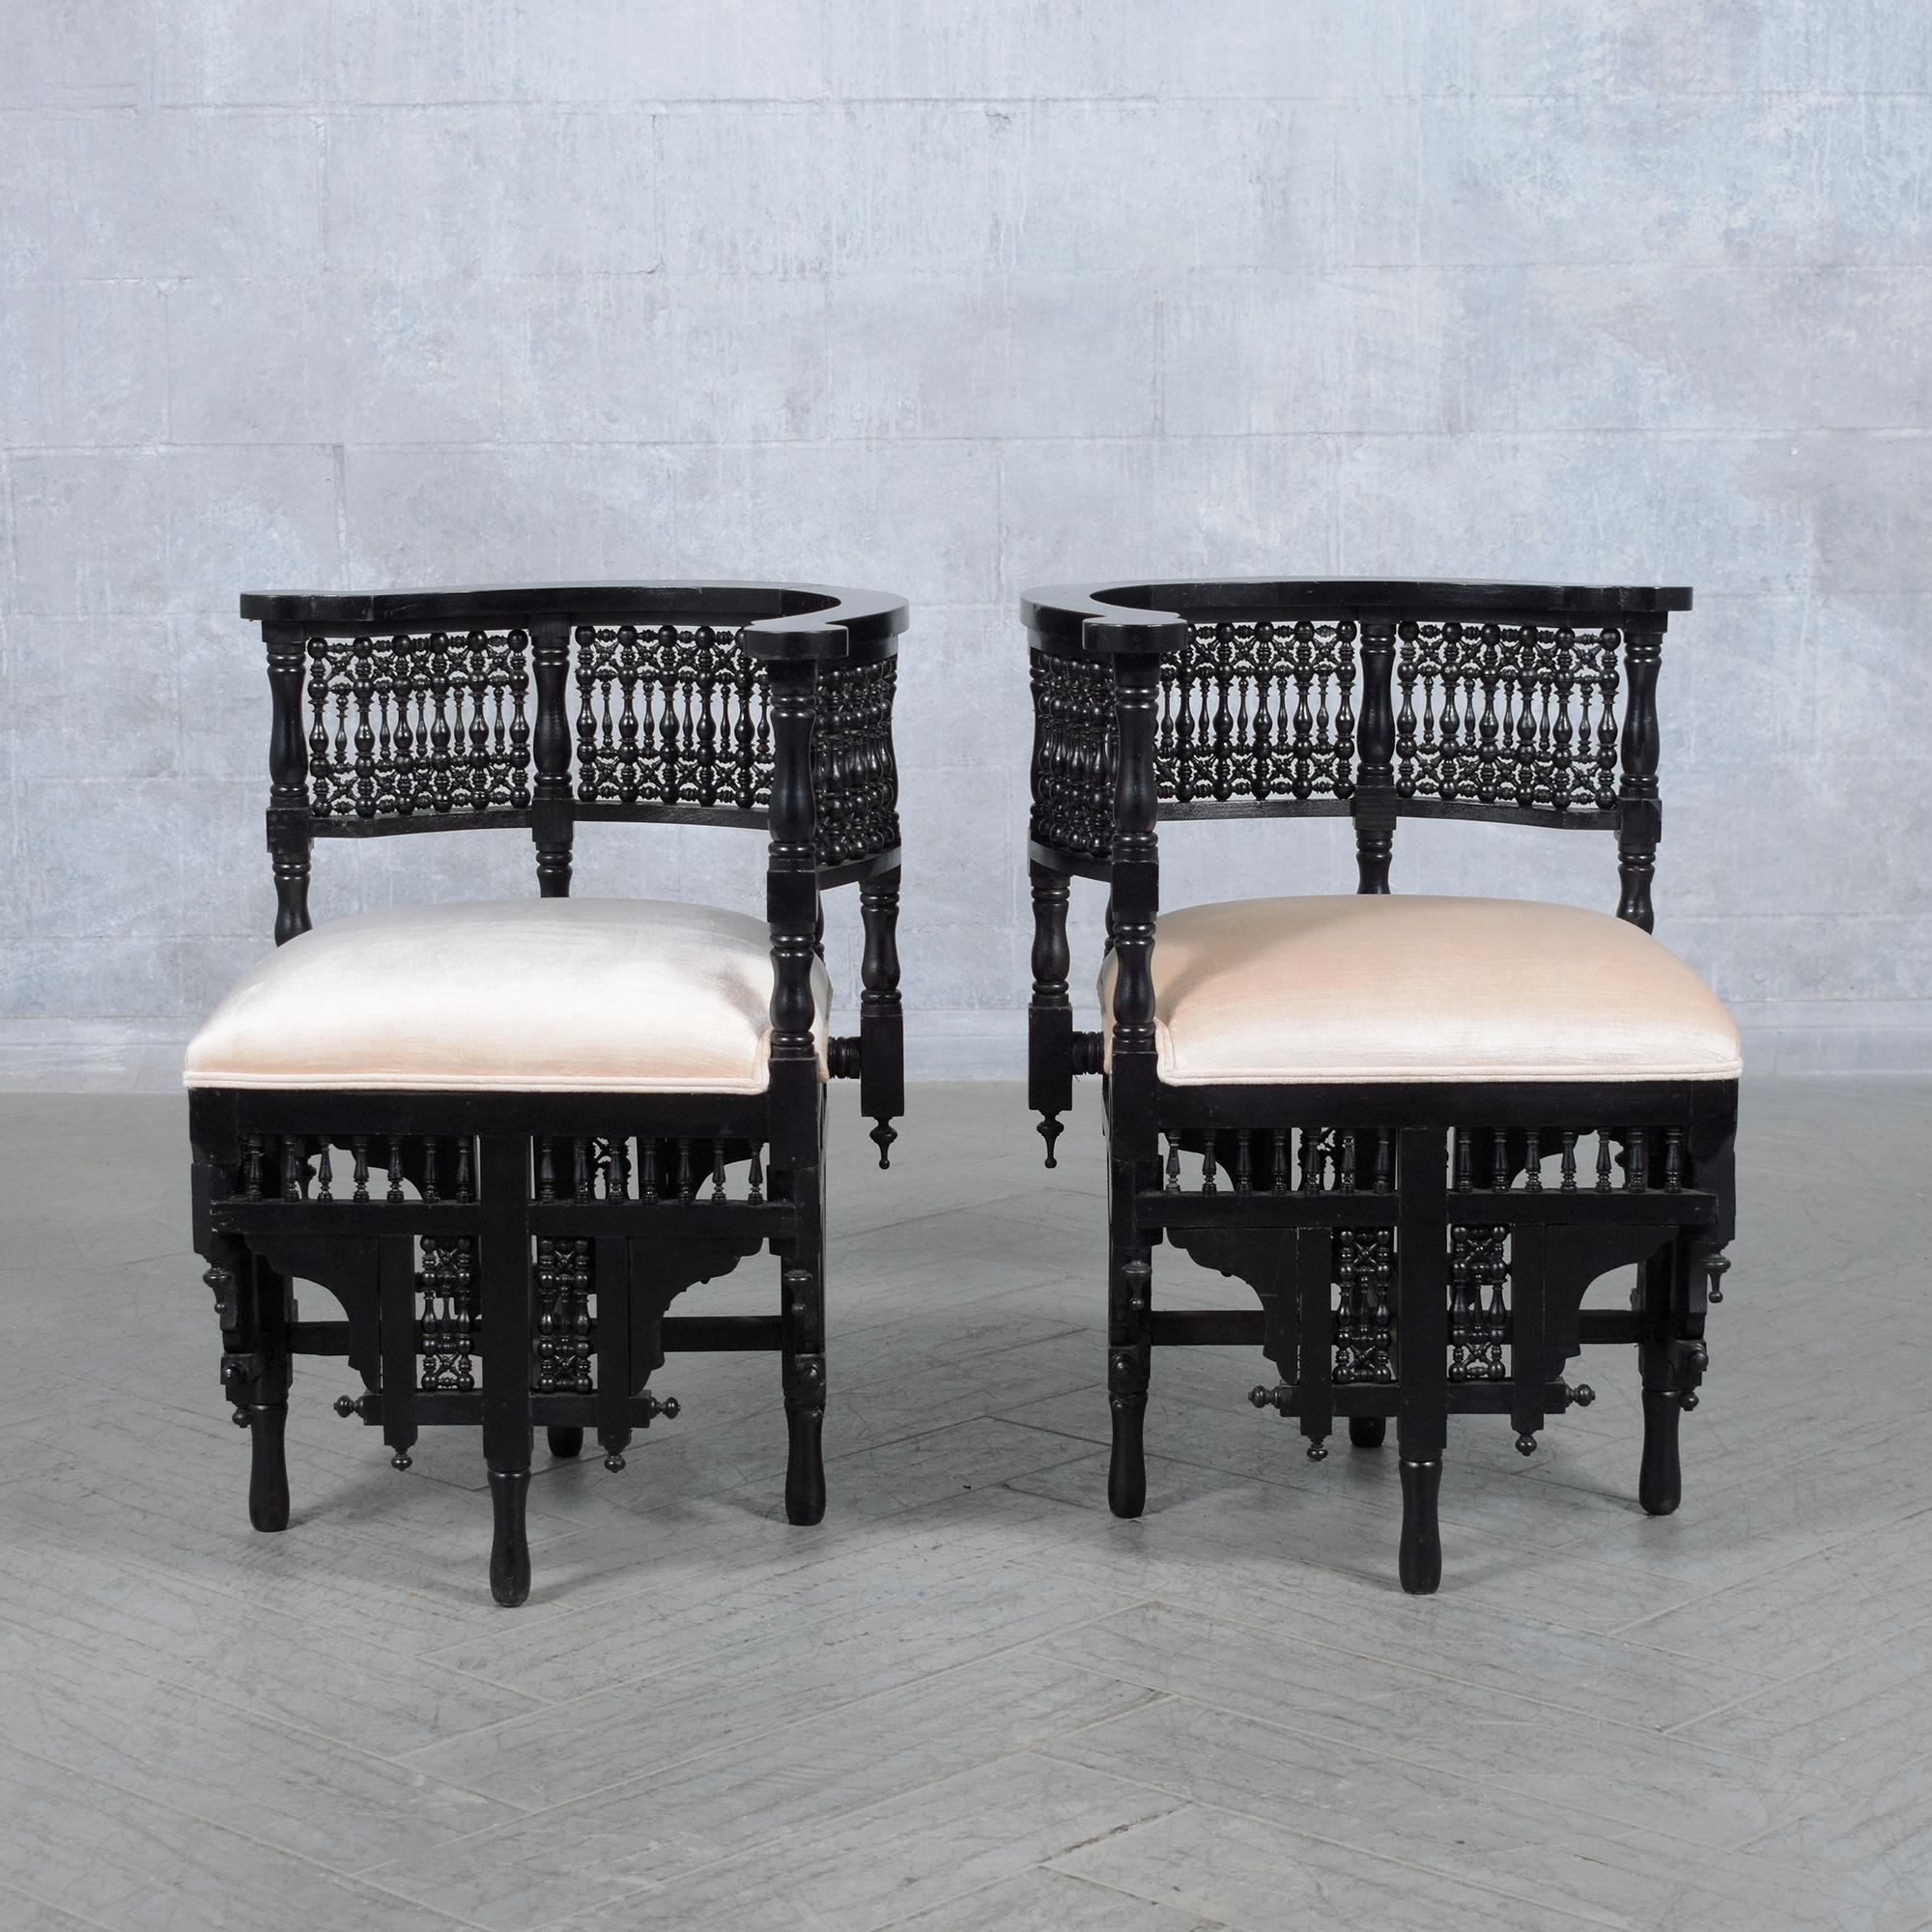 Découvrez l'élégance historique de notre paire de fauteuils d'angle syriens antiques des années 1900, mettant en valeur un savoir-faire inégalé et un design intemporel. Ces chaises exquises ont fait l'objet d'une restauration et d'un rembourrage